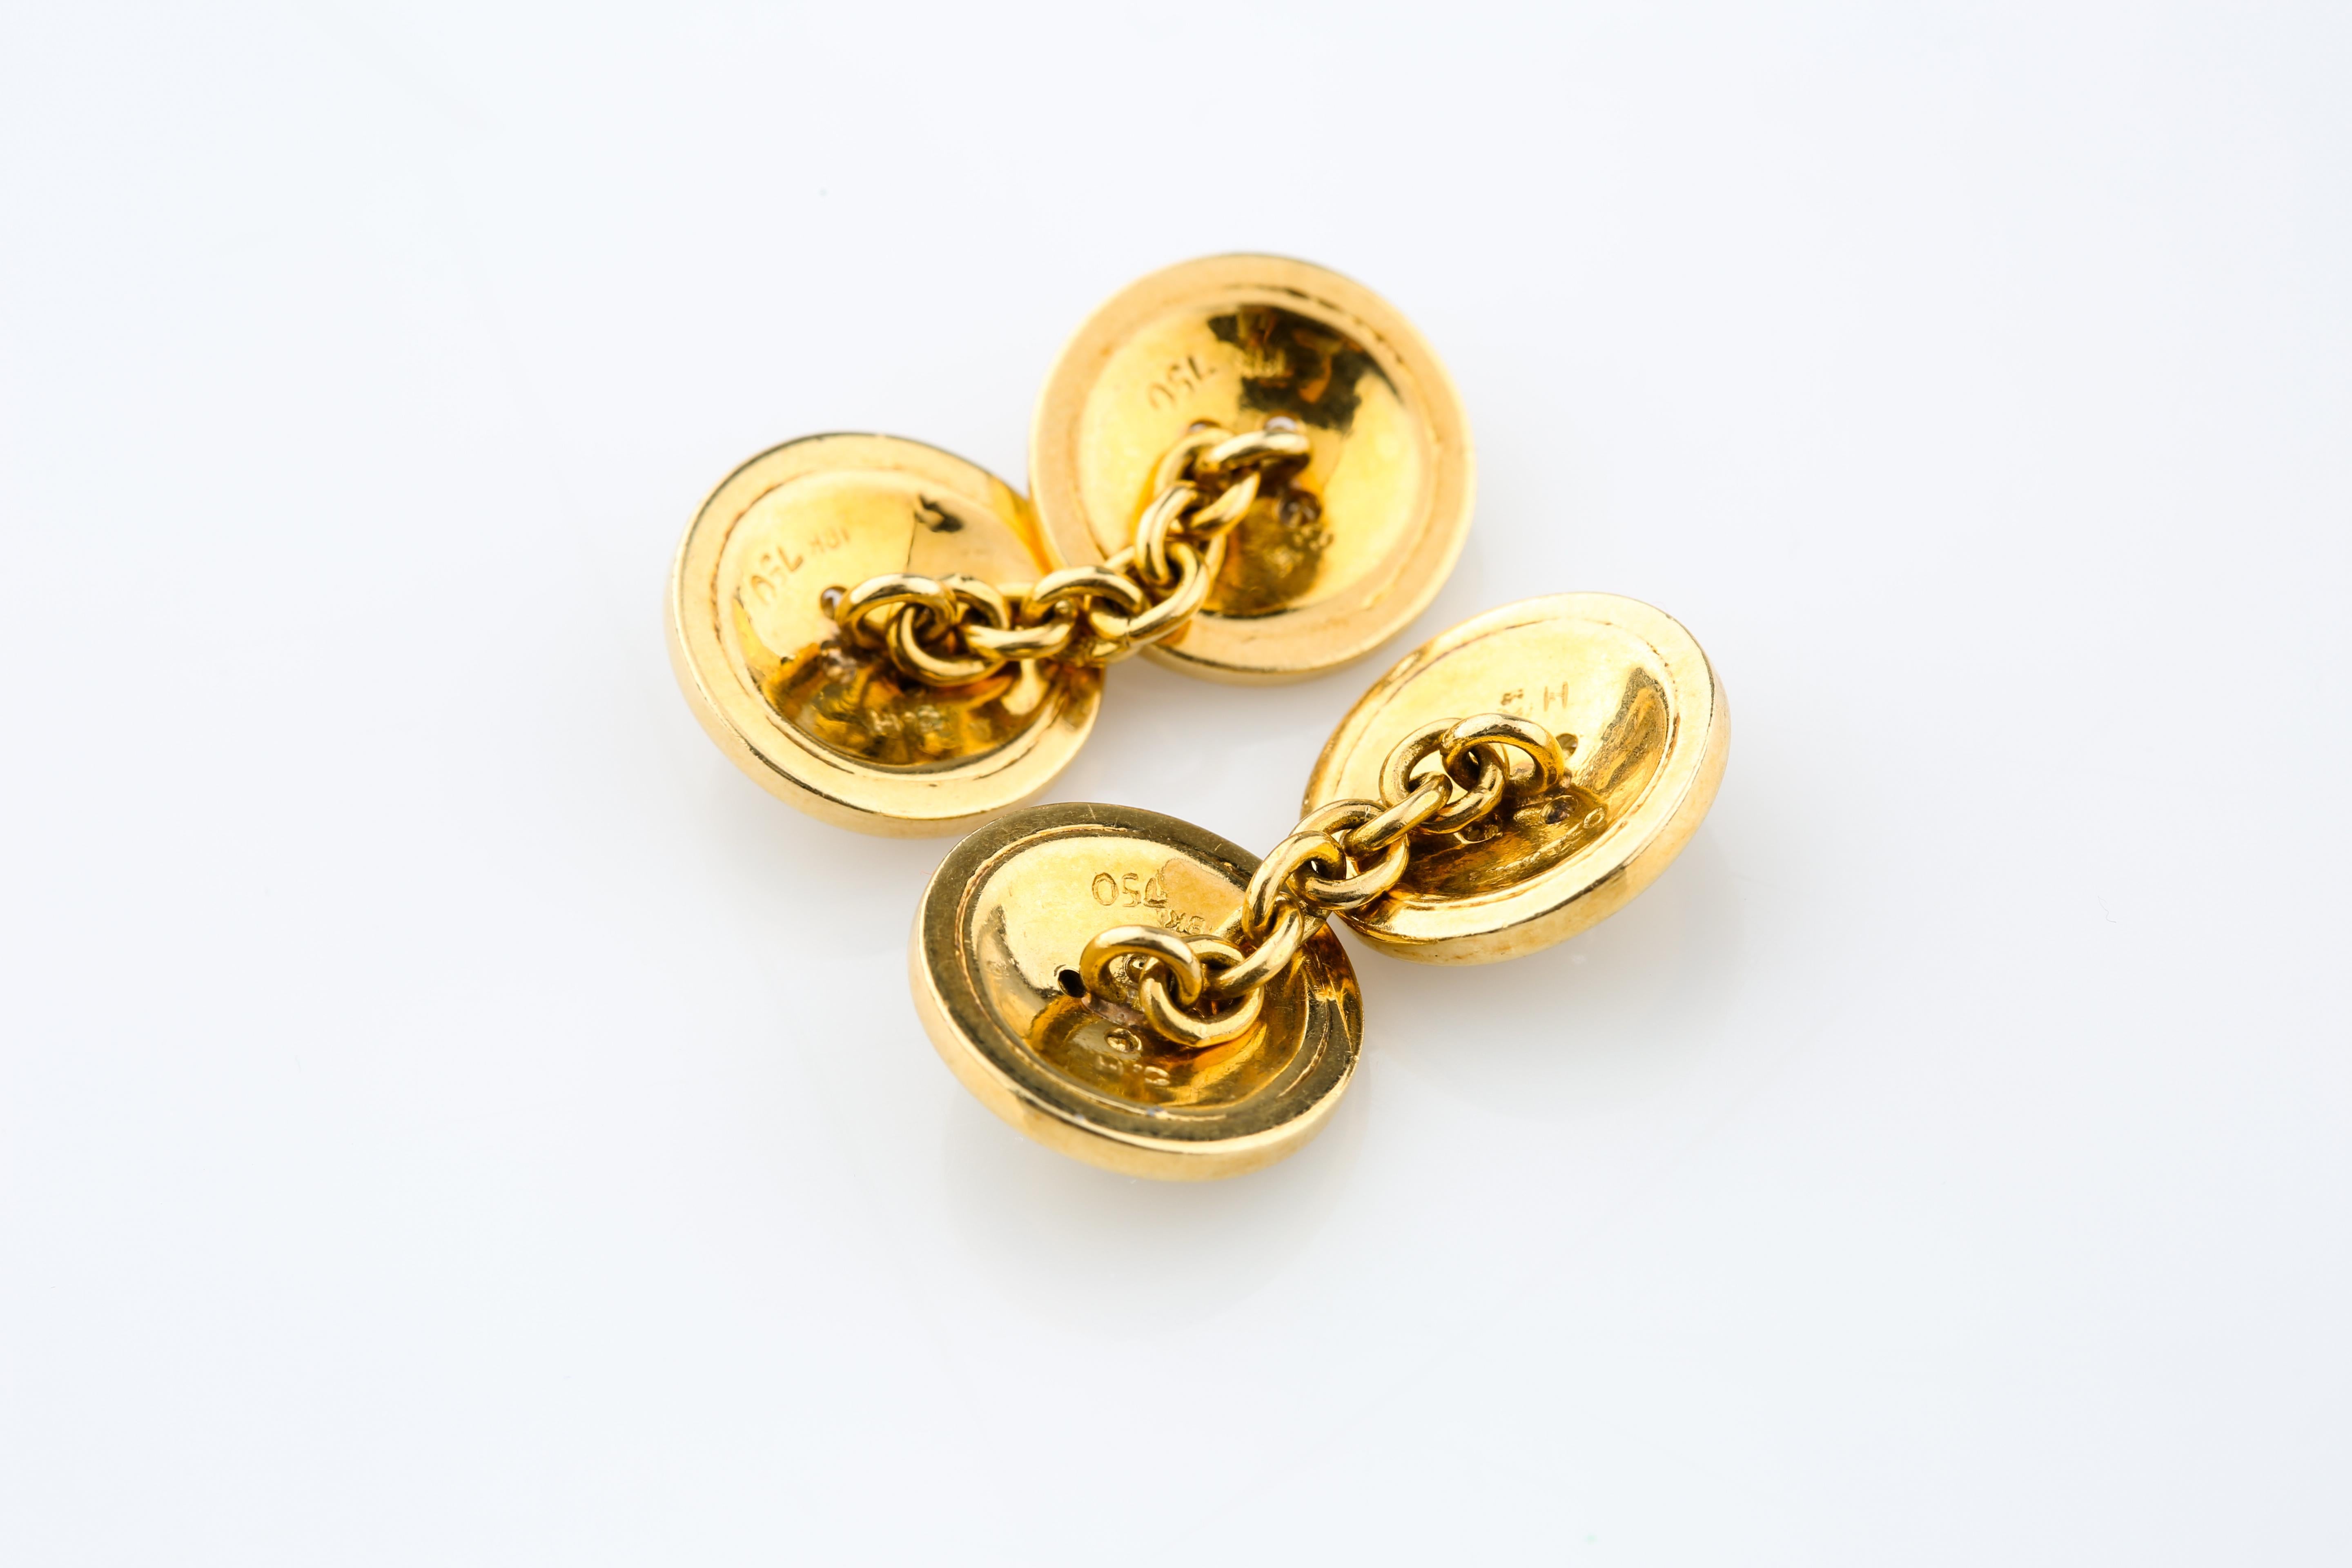 Manschettenknöpfe aus 750er Gelbgold
Jeder Knopf hat einen Durchmesser von 13 mm
Gesamtmasse = 12.7 Gramm
Jeweils graviert mit 